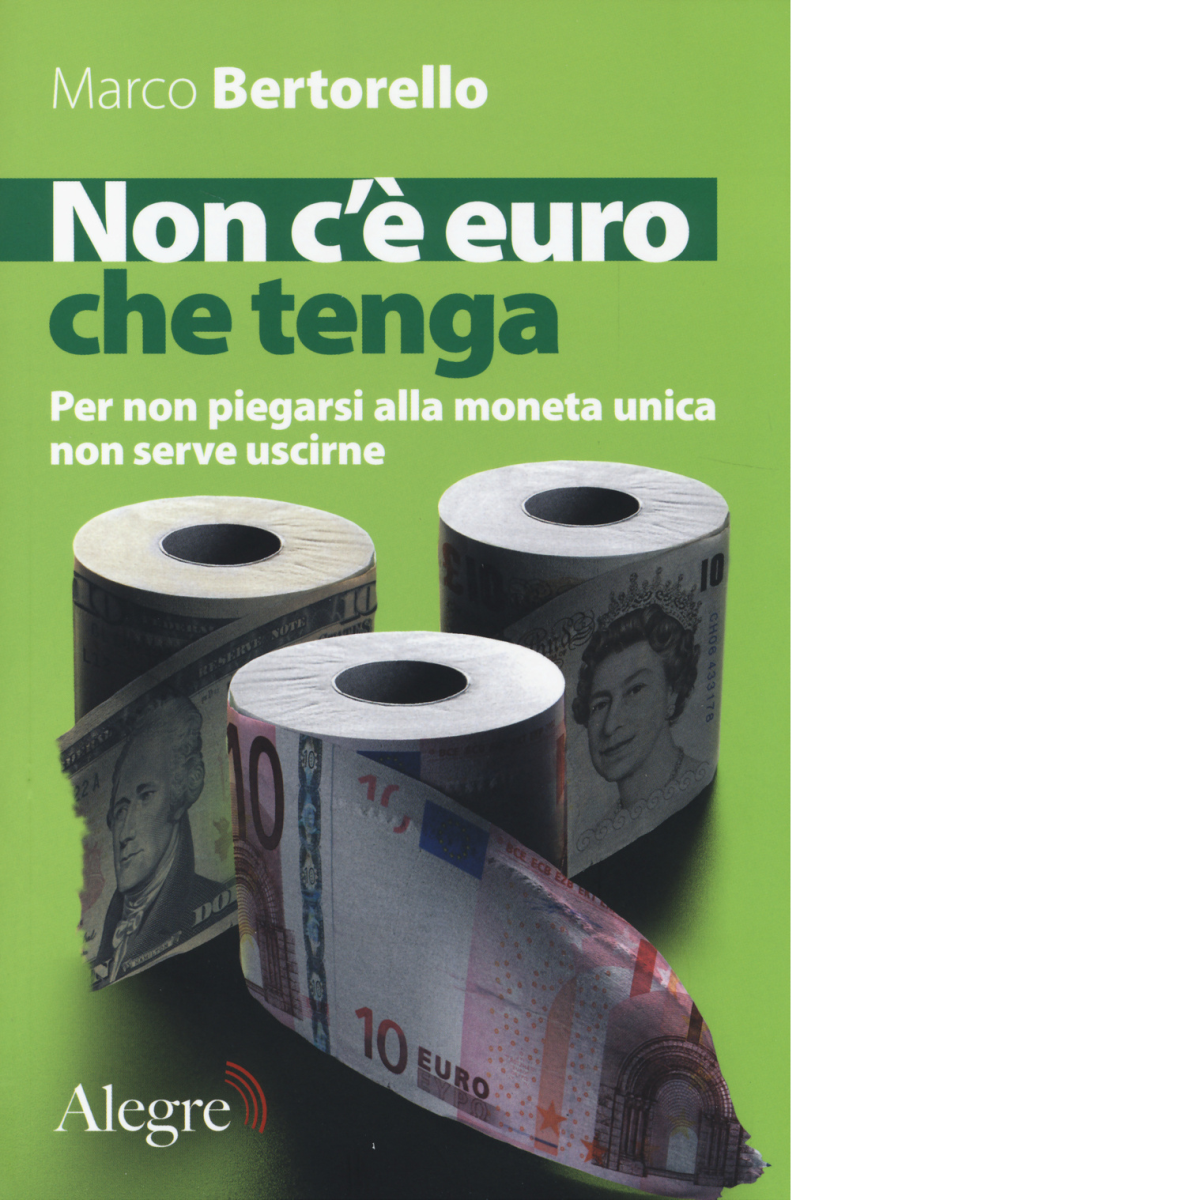 Non c'? euro che tenga di Marco Bertorello - edizioni alegre, 2014